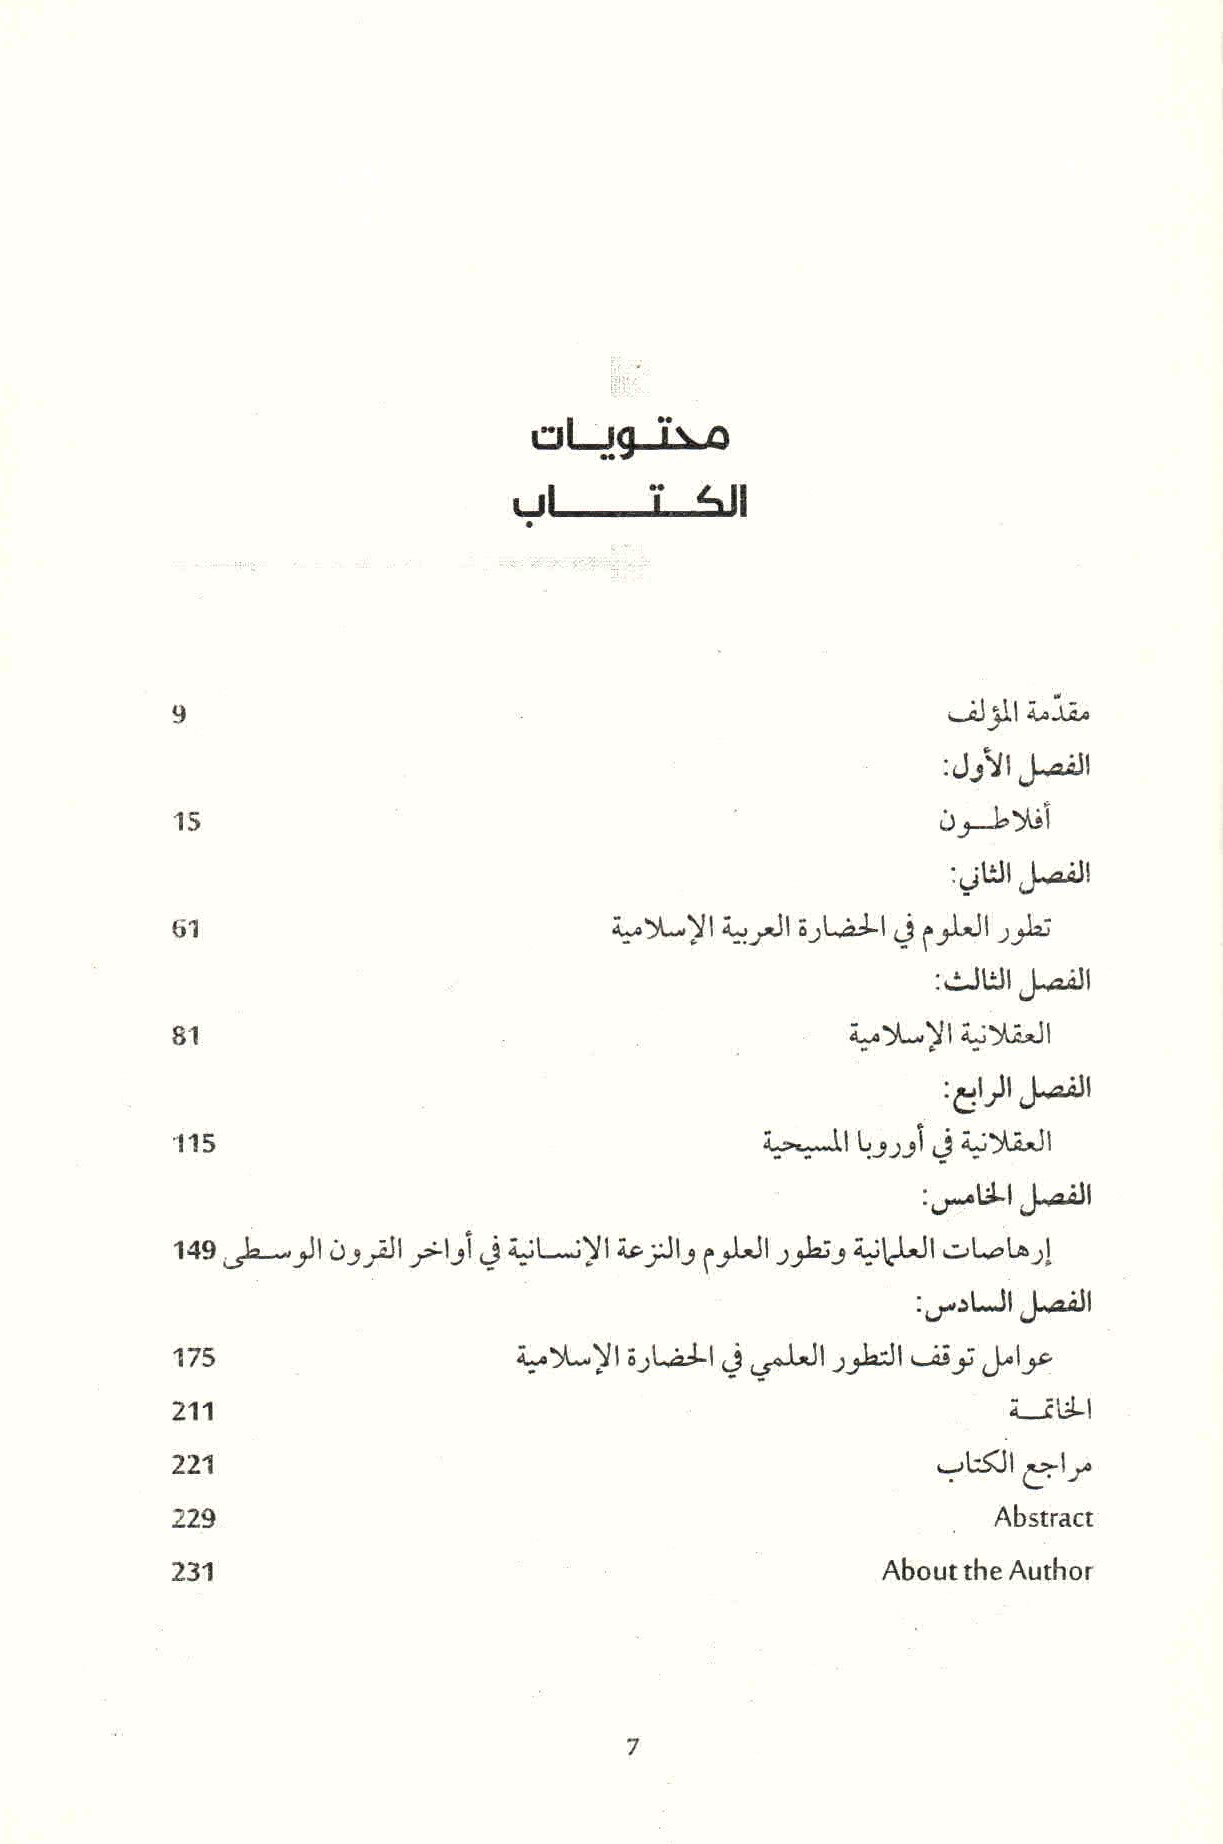 ص. 7 قائمة محتويات كتاب الحضارة العربية الإسلامية وعوامل تأخرها.